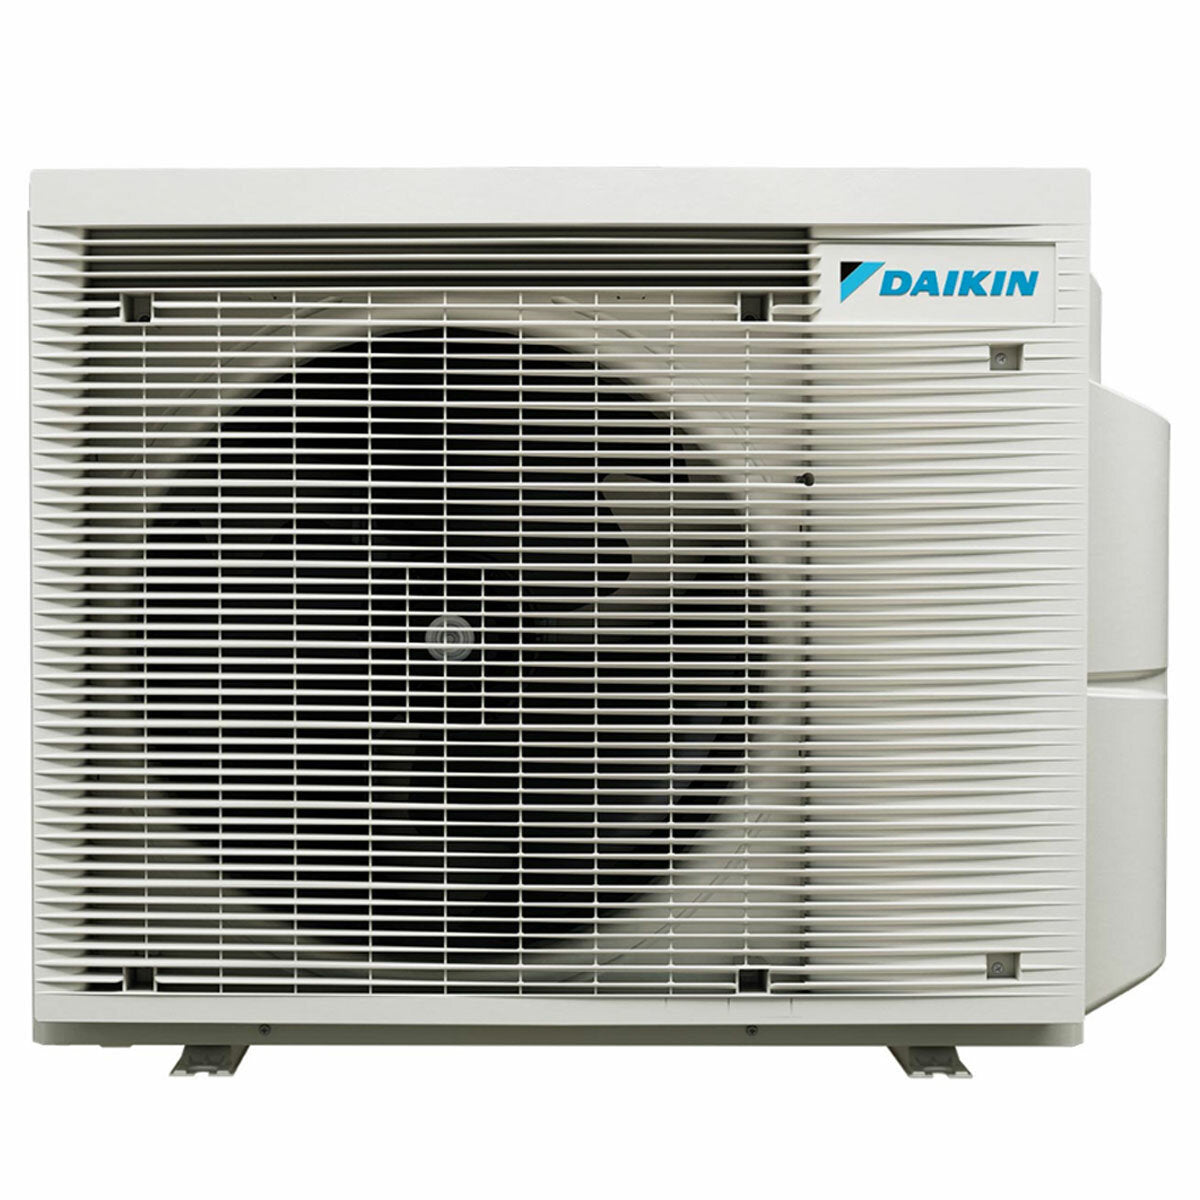 Daikin Emura 3 trial split air conditioner 12000+15000+18000 BTU inverter A+ wifi outdoor unit 7.4 kW White